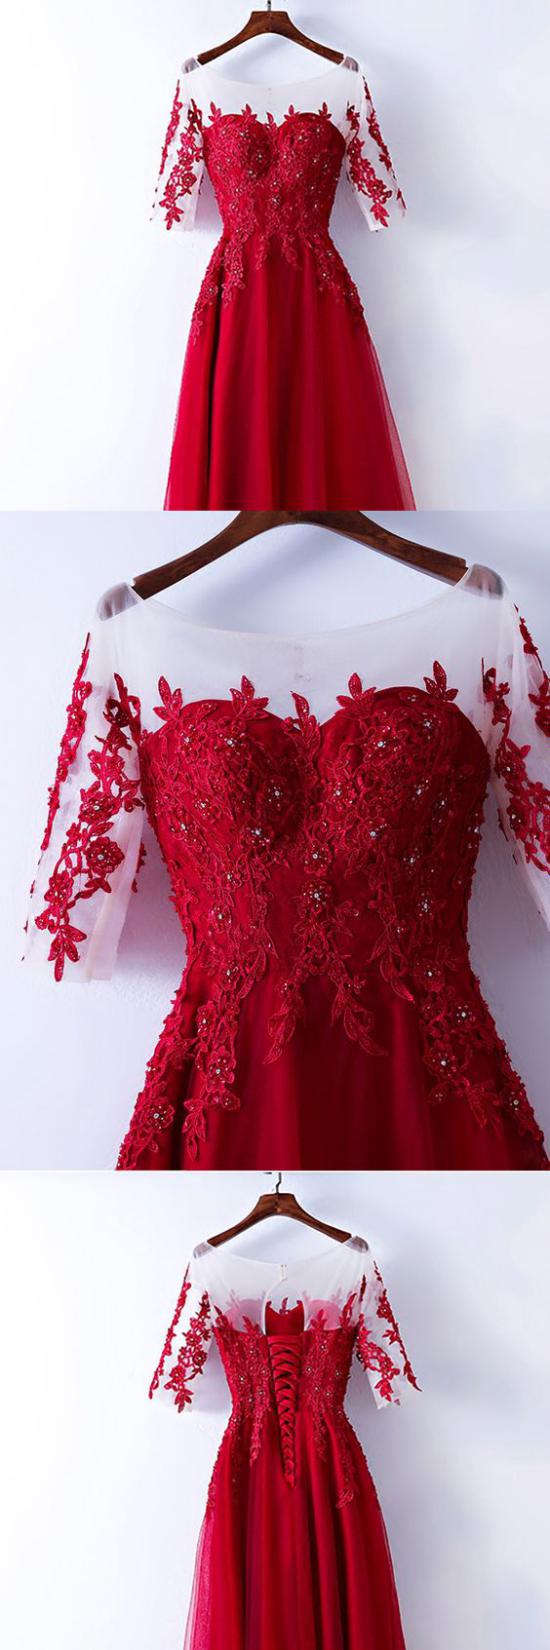 مدل لباس شب قرمز 2018,مدل لباس شب قرمز 2019,لباس شب قرمز,